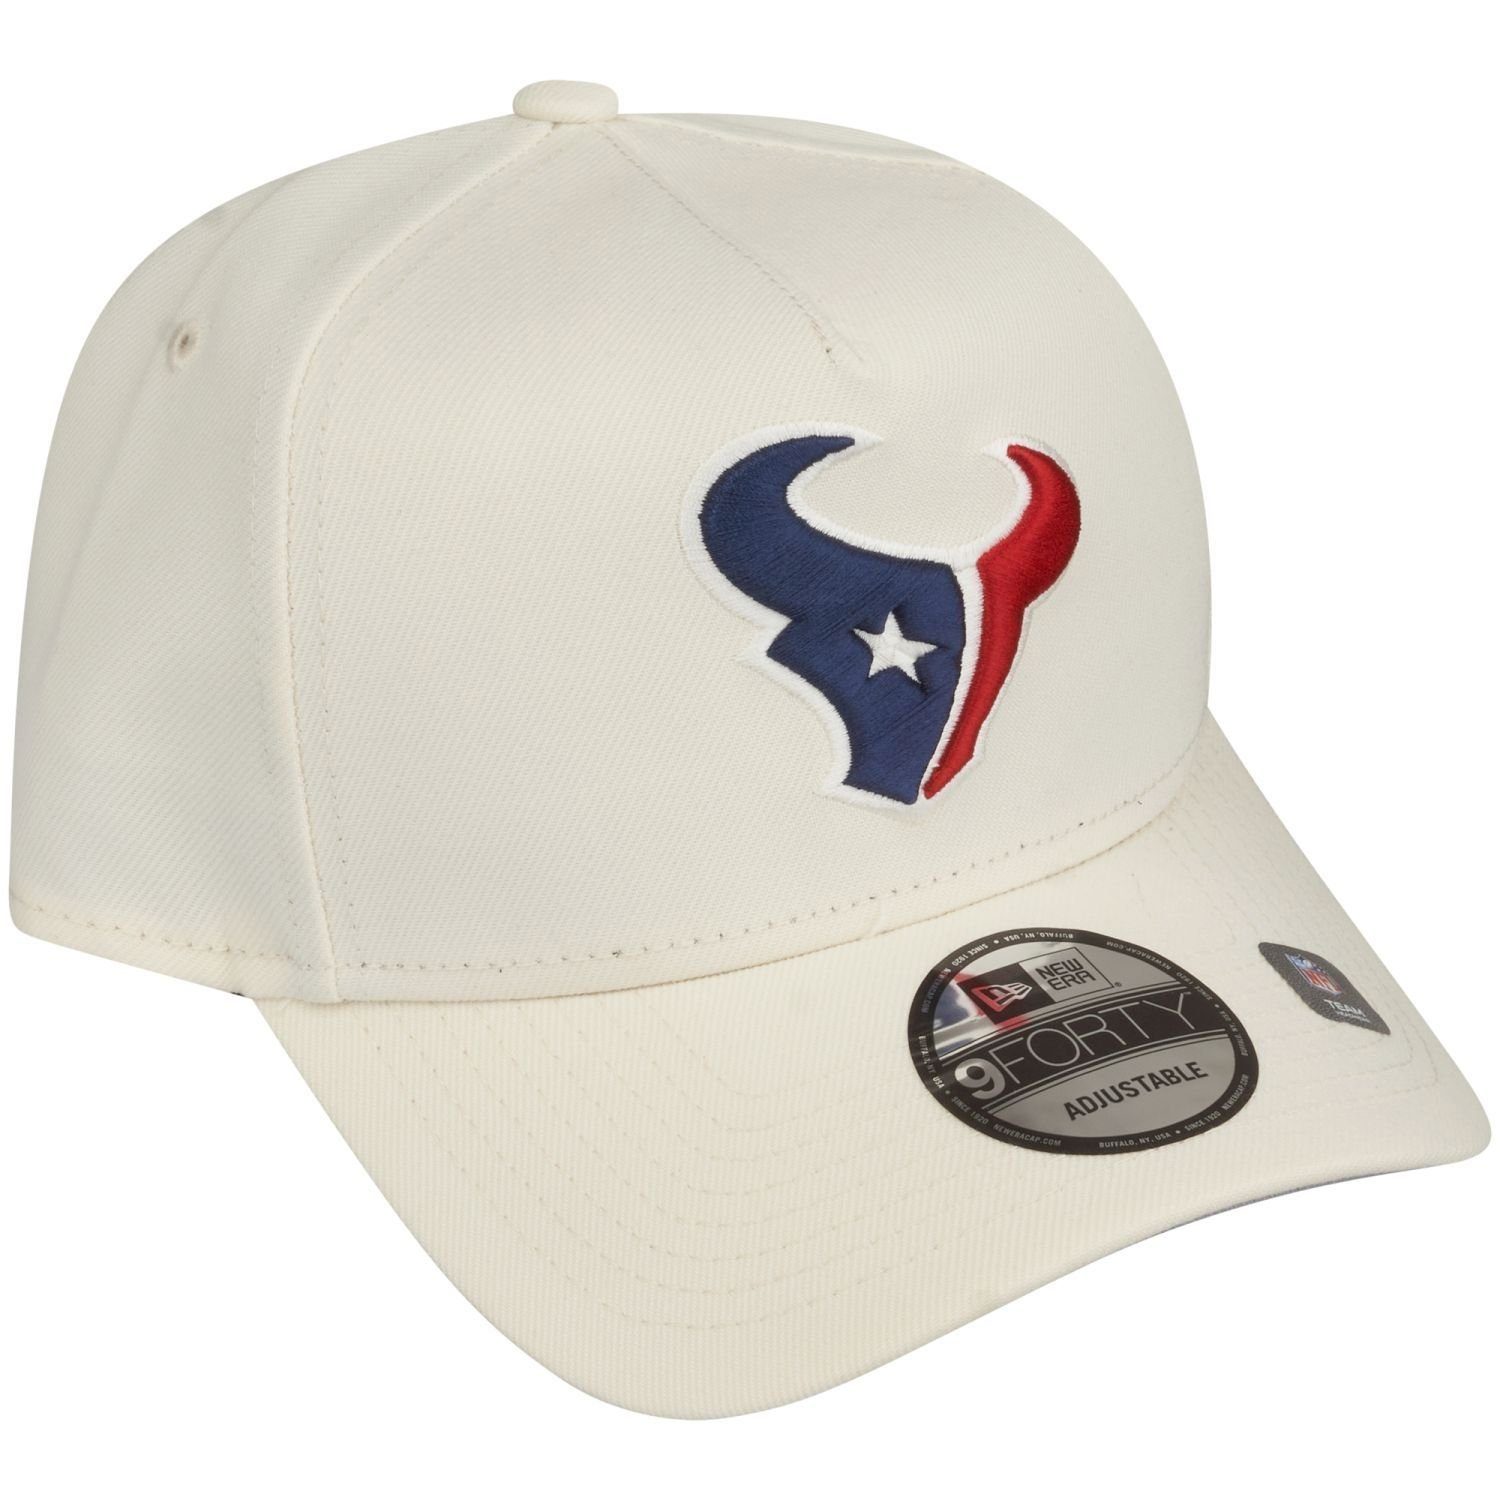 New Era Houston Texans Trucker 9Forty Cap TEAMS Trucker NFL white AFrame chrome